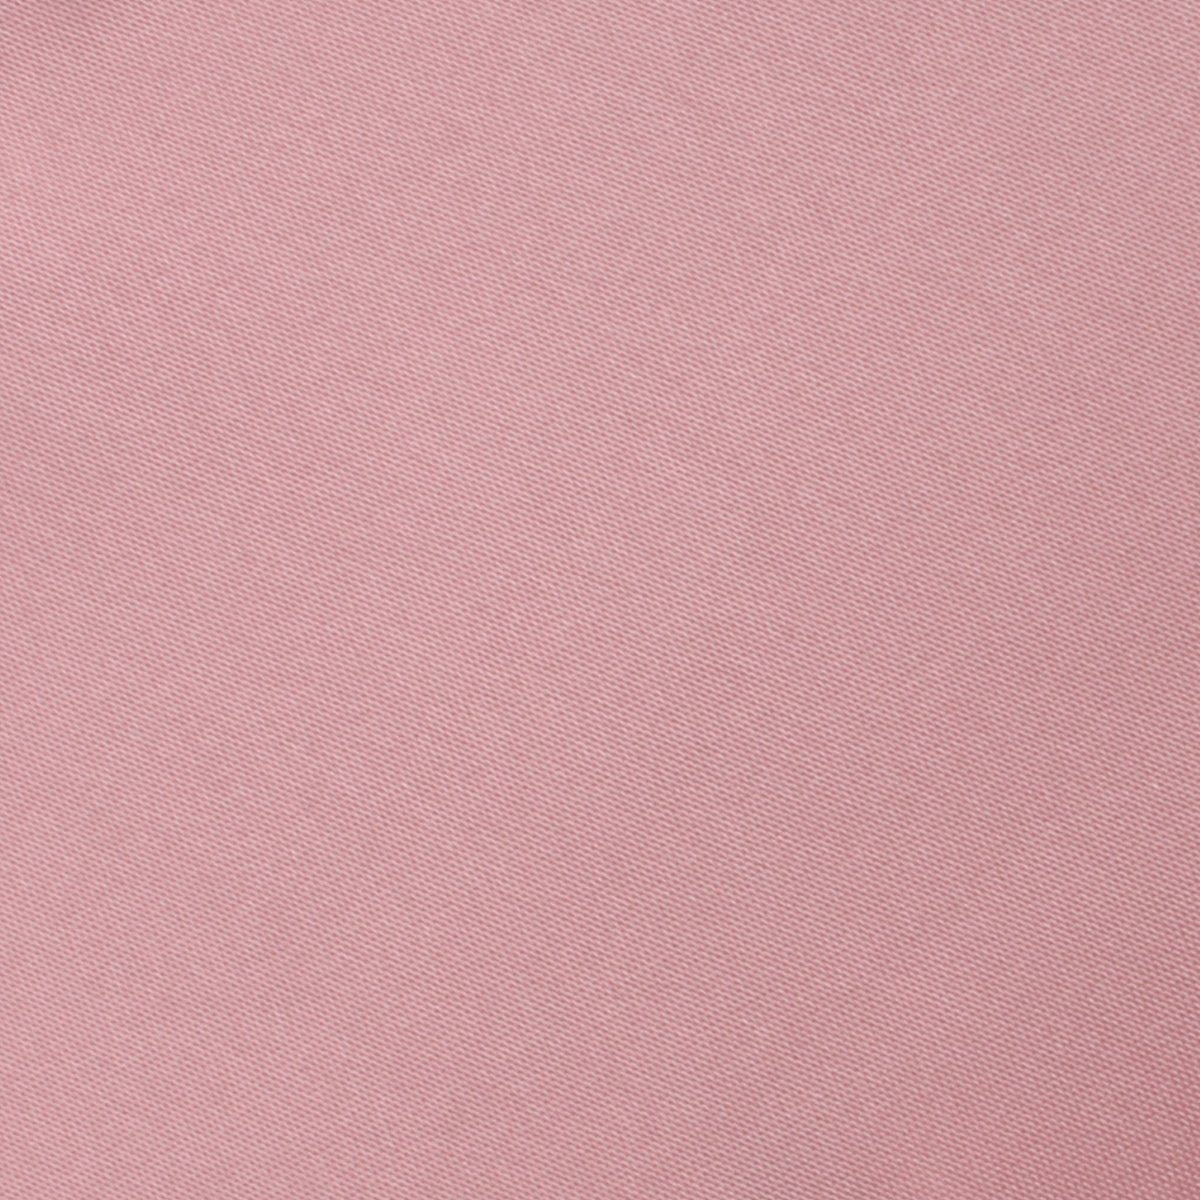 Dusty Blush Pink Satin Necktie Fabric